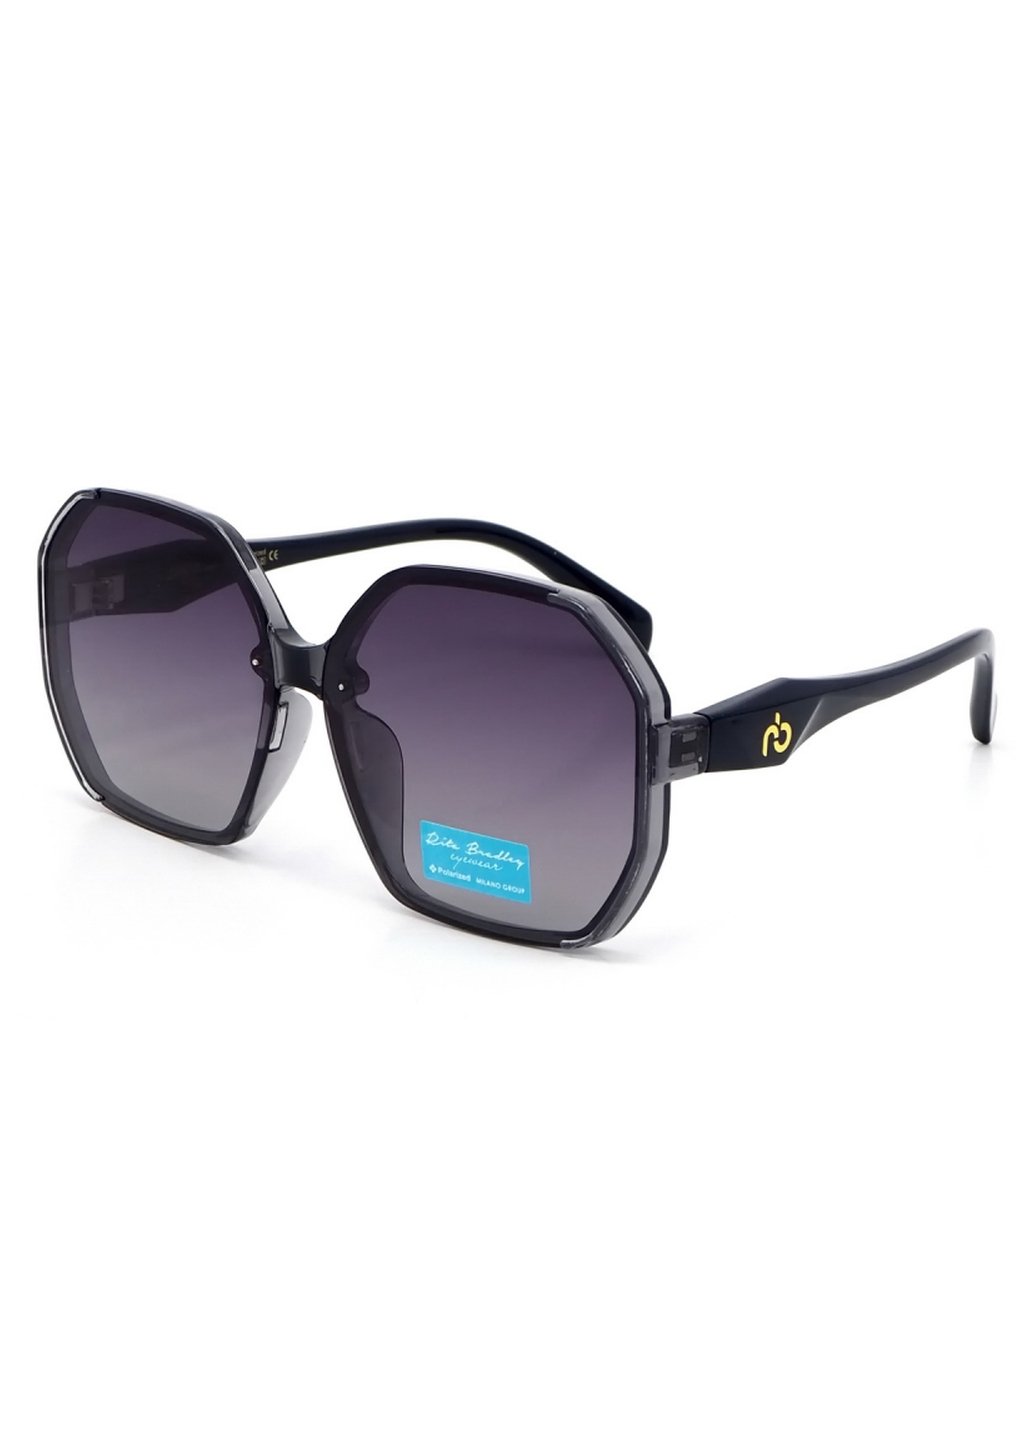 Купить Женские солнцезащитные очки Rita Bradley с поляризацией RB729 112068 в интернет-магазине